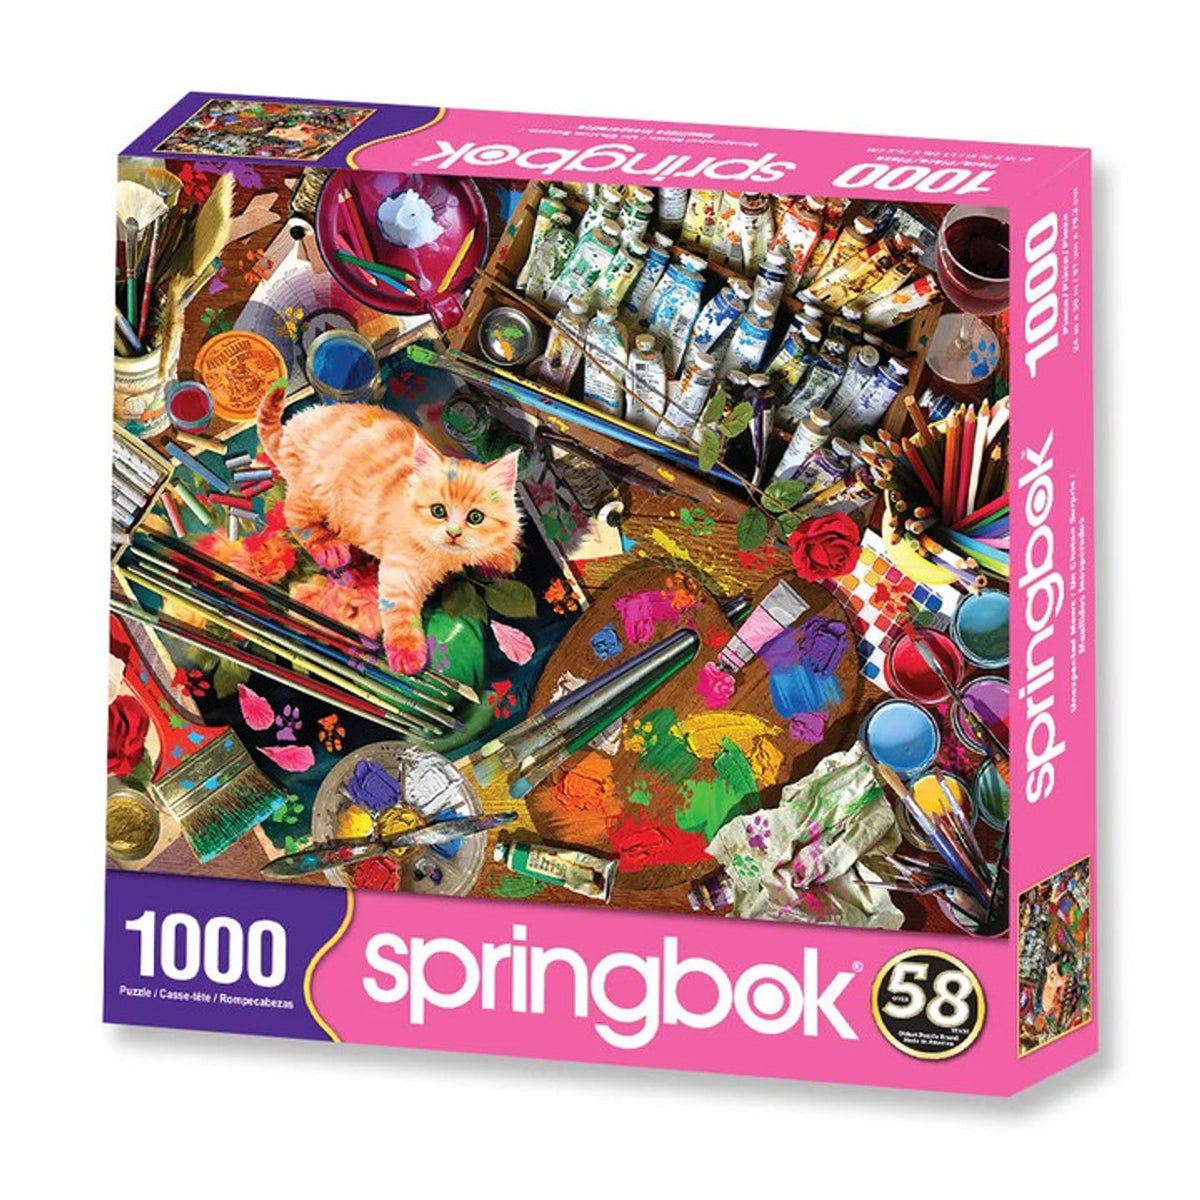 Springbok Unexpected Mews 1000 pc Puzzle